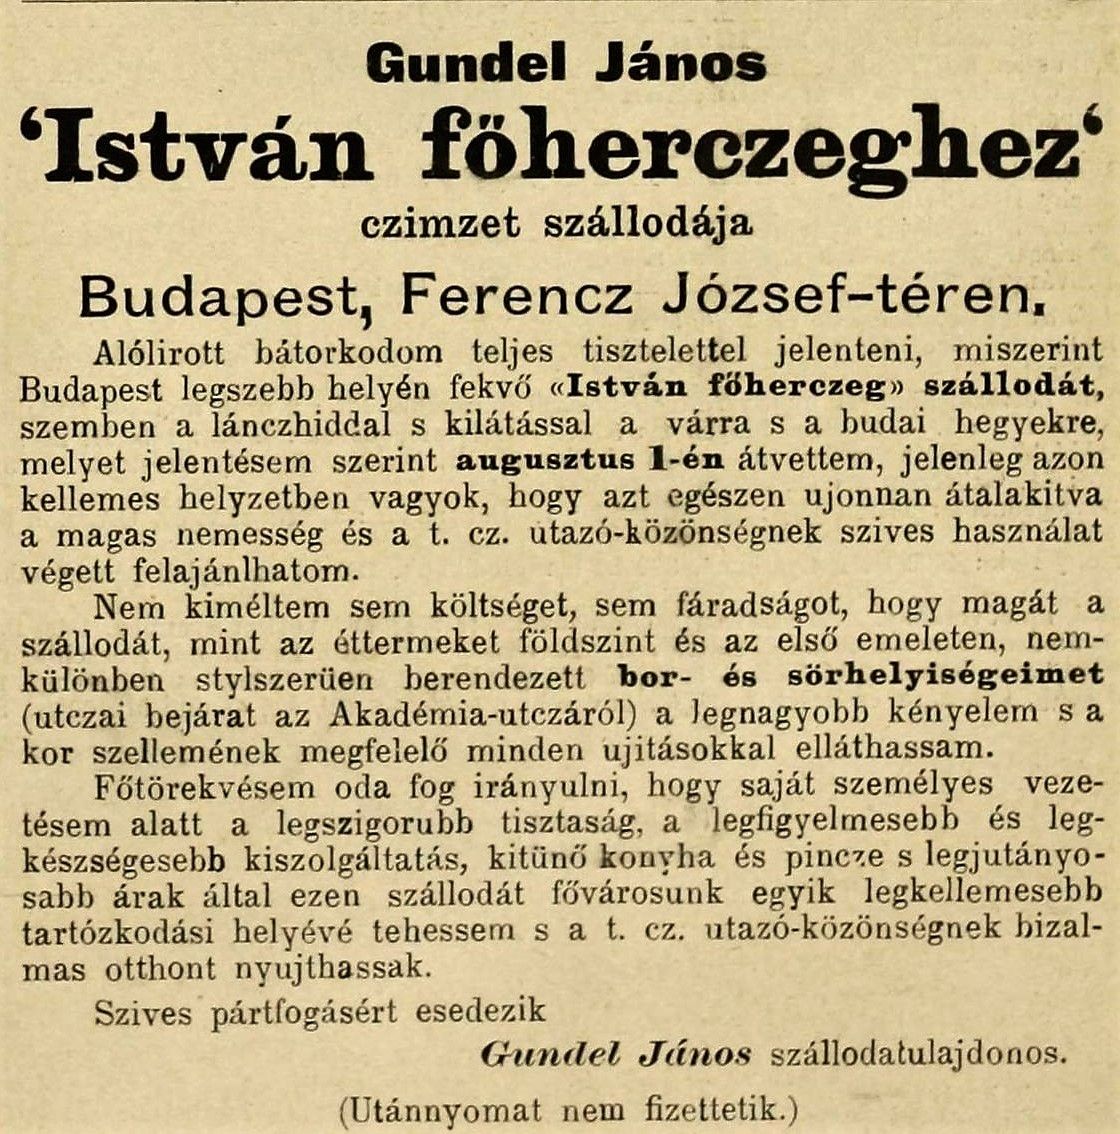 Gundel János saját szövegezésű ajánlójának megjelenése egy korabeli lapban